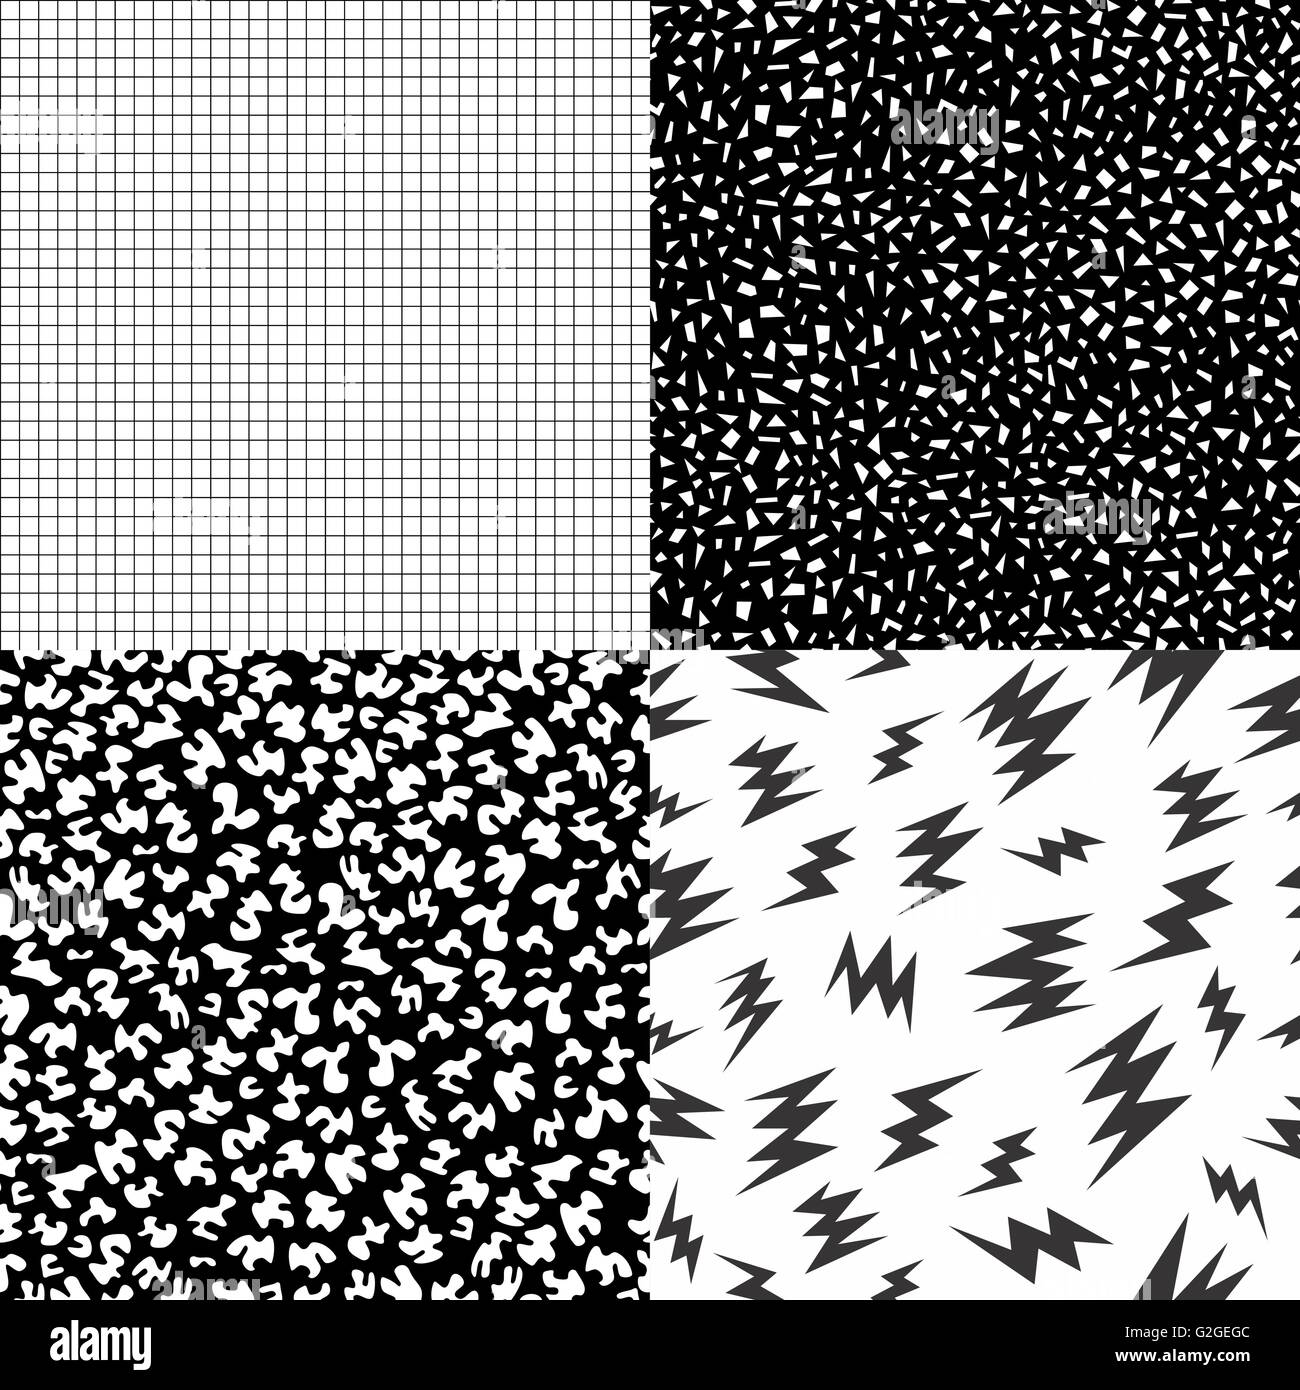 Satz von Retro-Vintage 80er Jahre nahtlose Muster in schwarz und weiß mit Memphis Mode Stil geometrischen Formen, Gitter, Riegel. Ideal für Stock Vektor